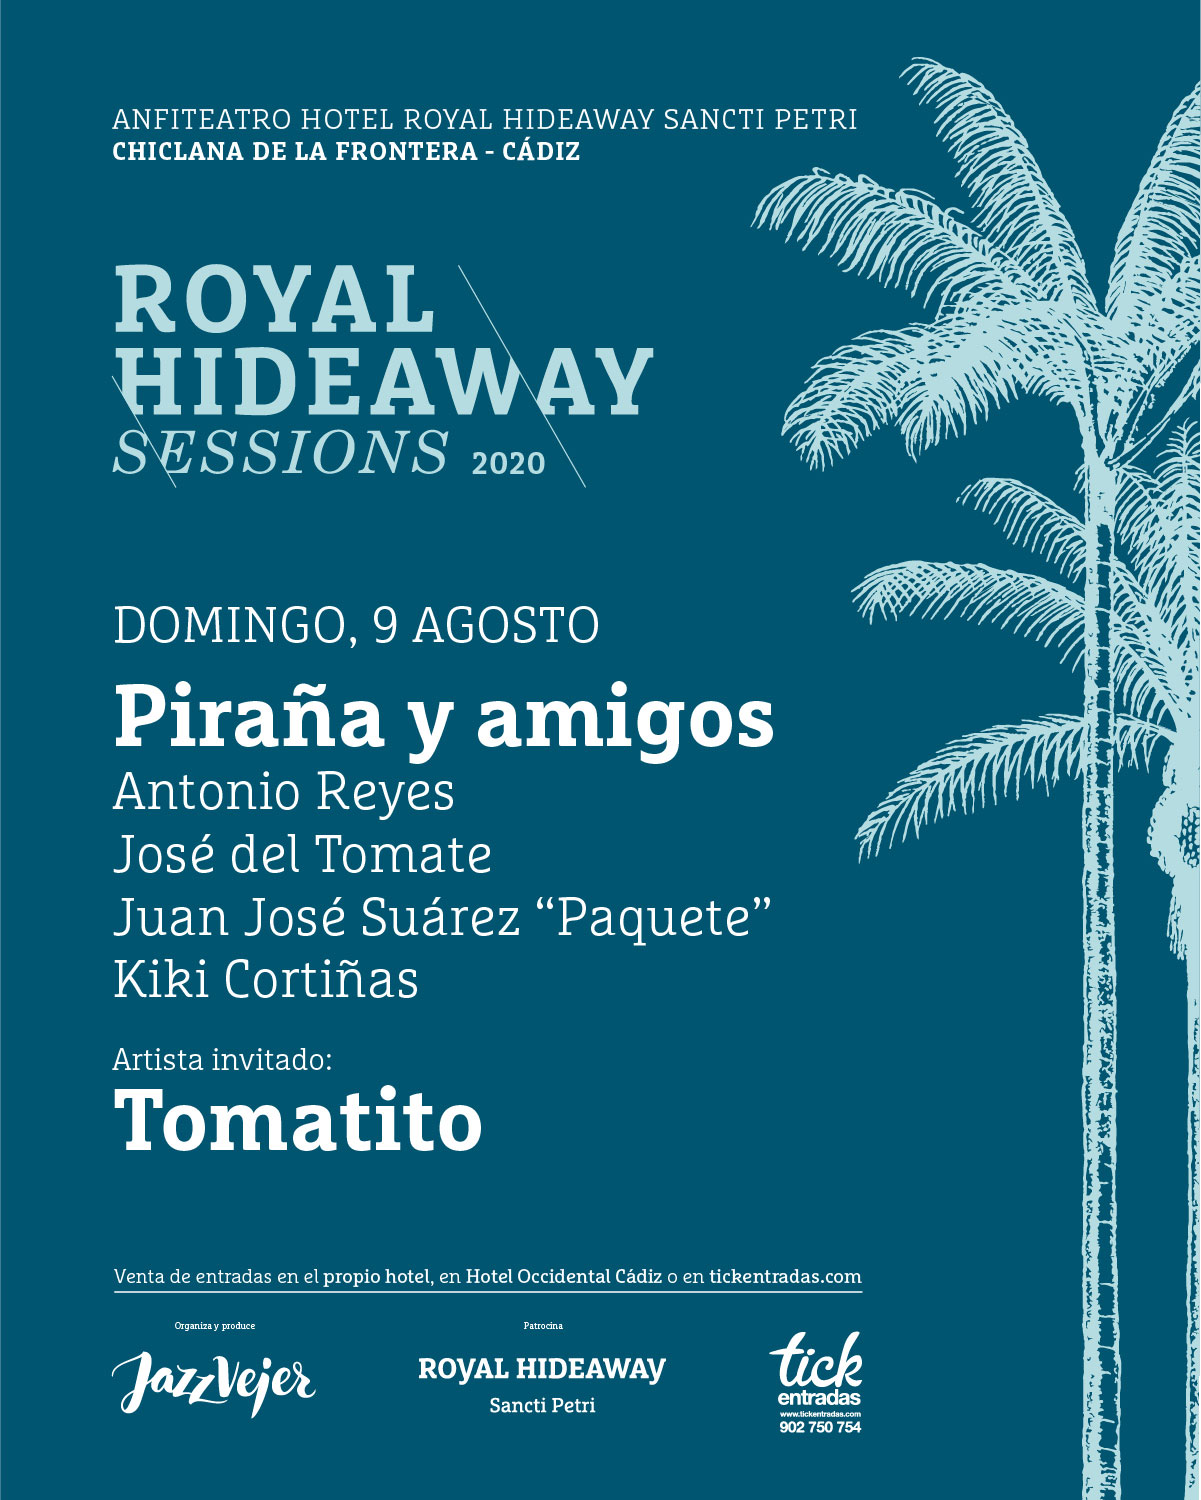 Piraña y amigos - Tomatito - Royal Hideaway Sessions